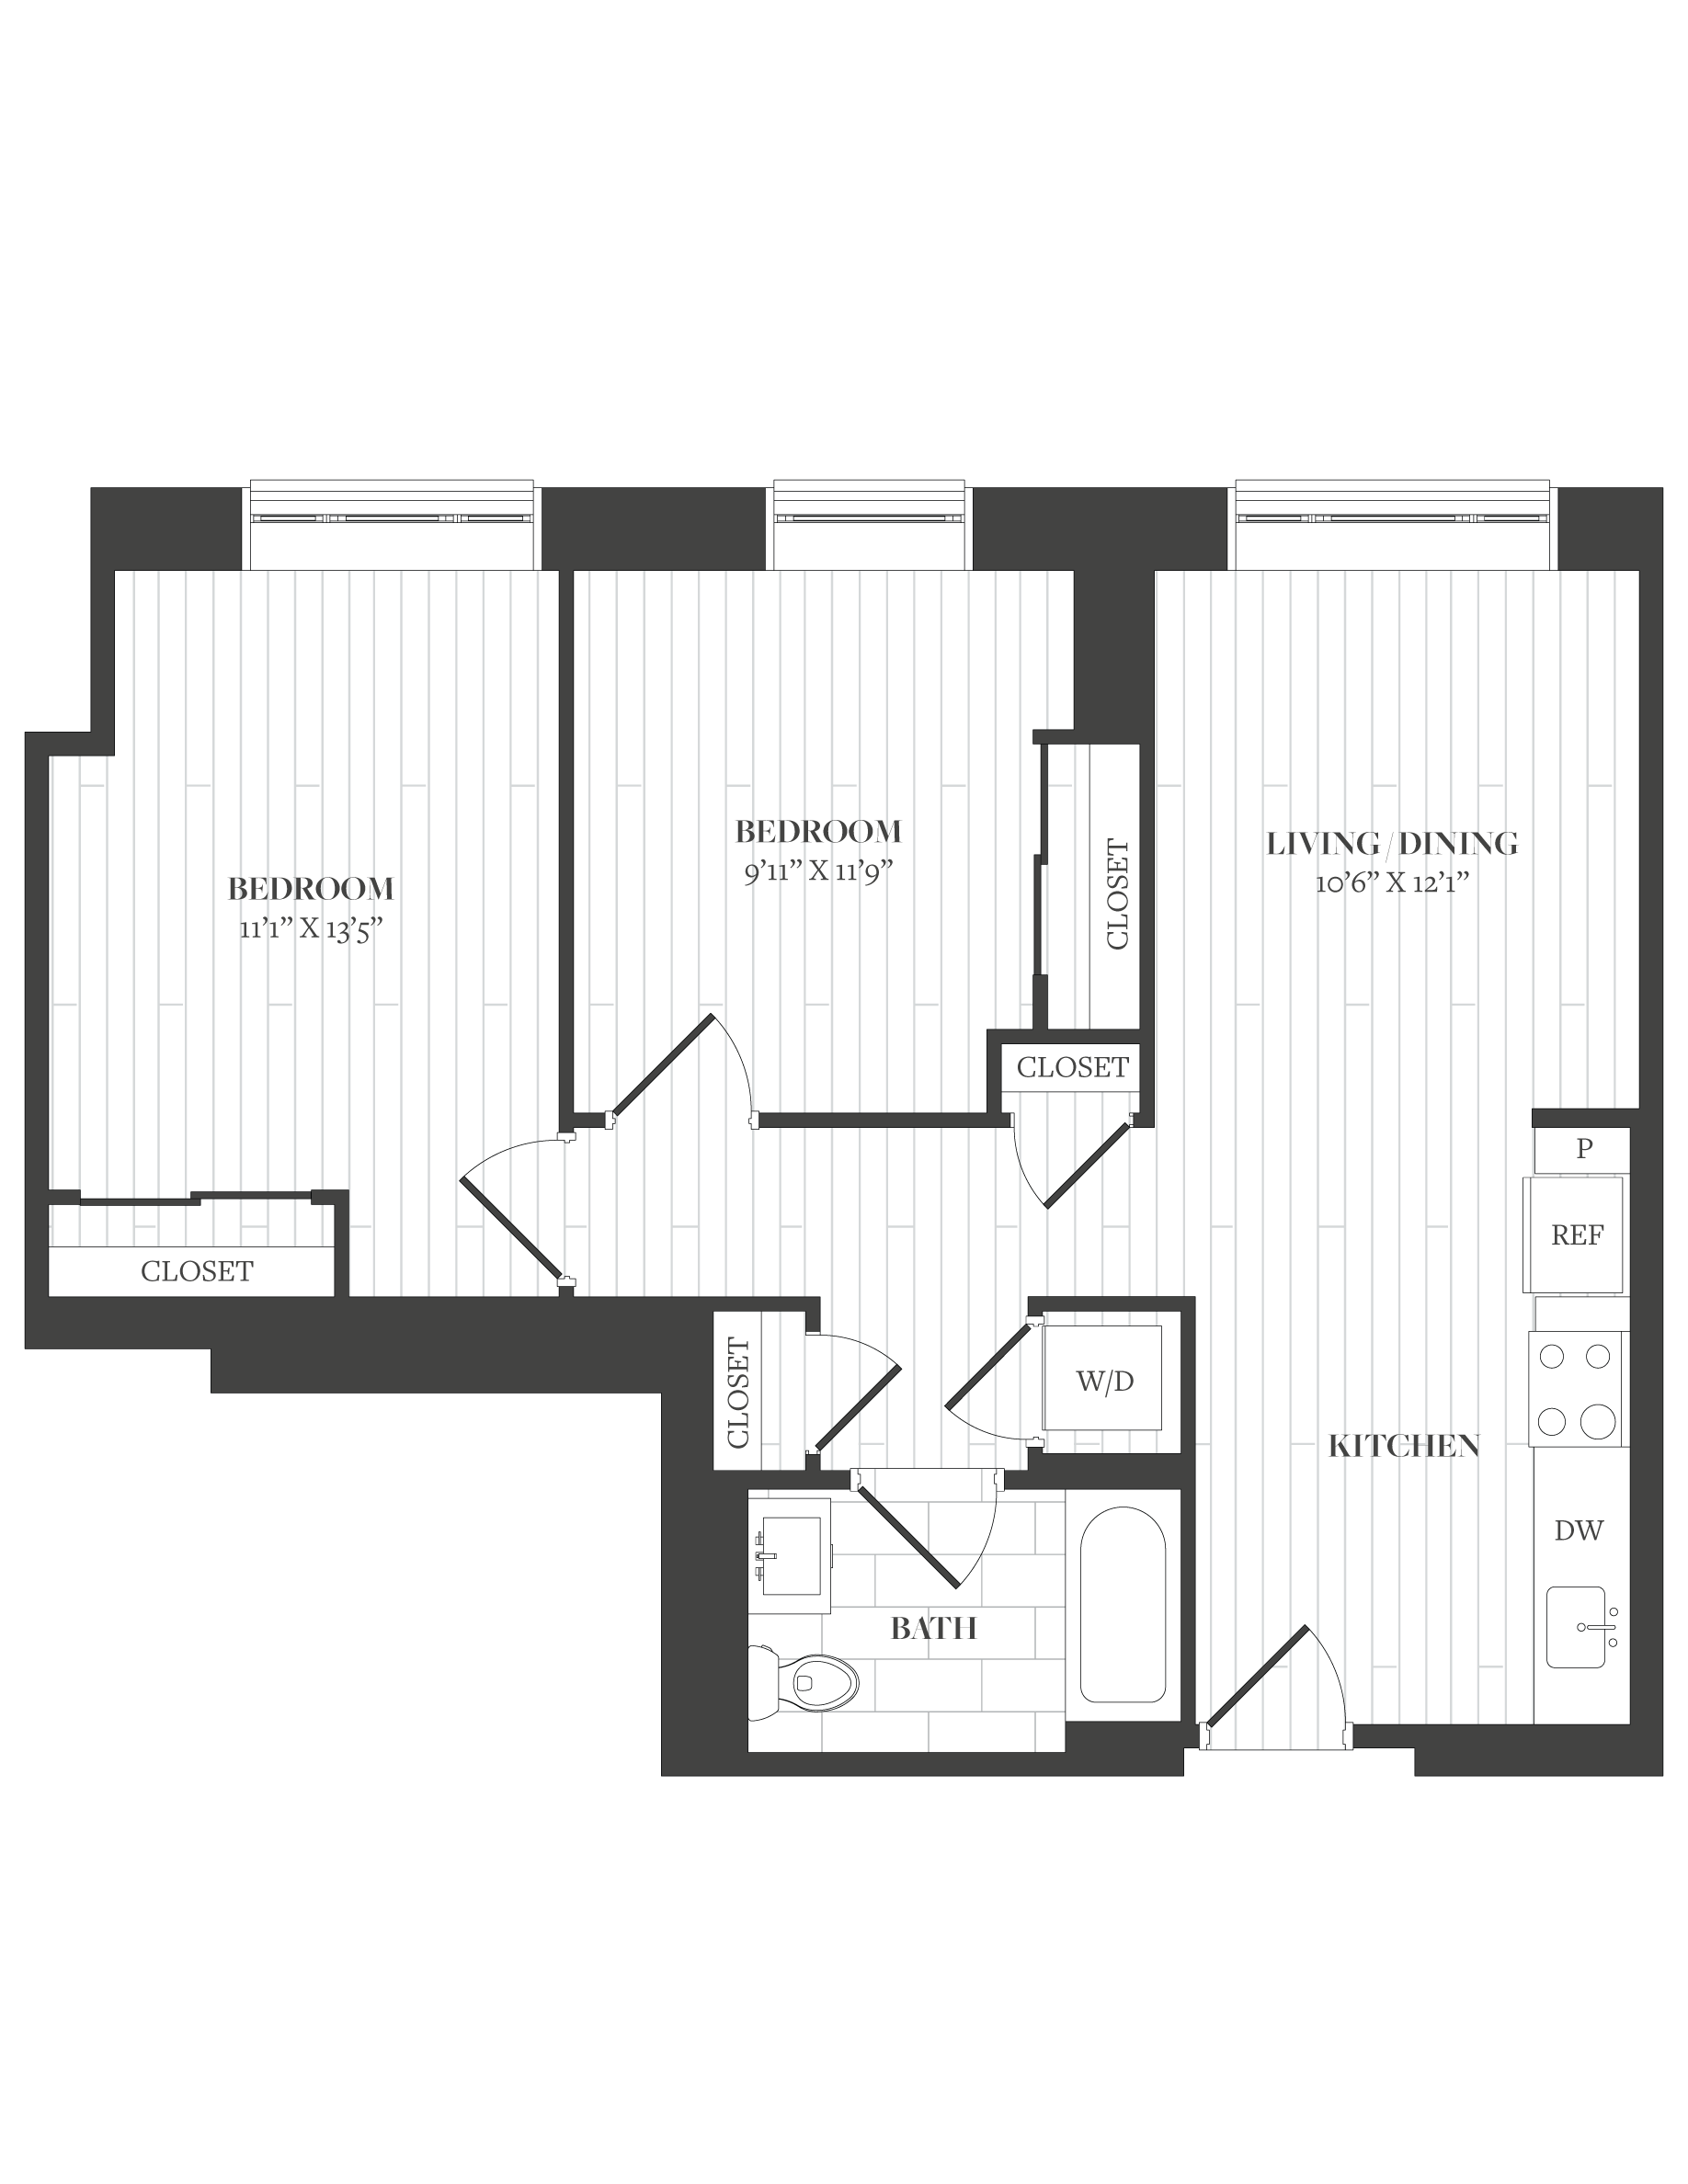 Floorplan image of unit 1416